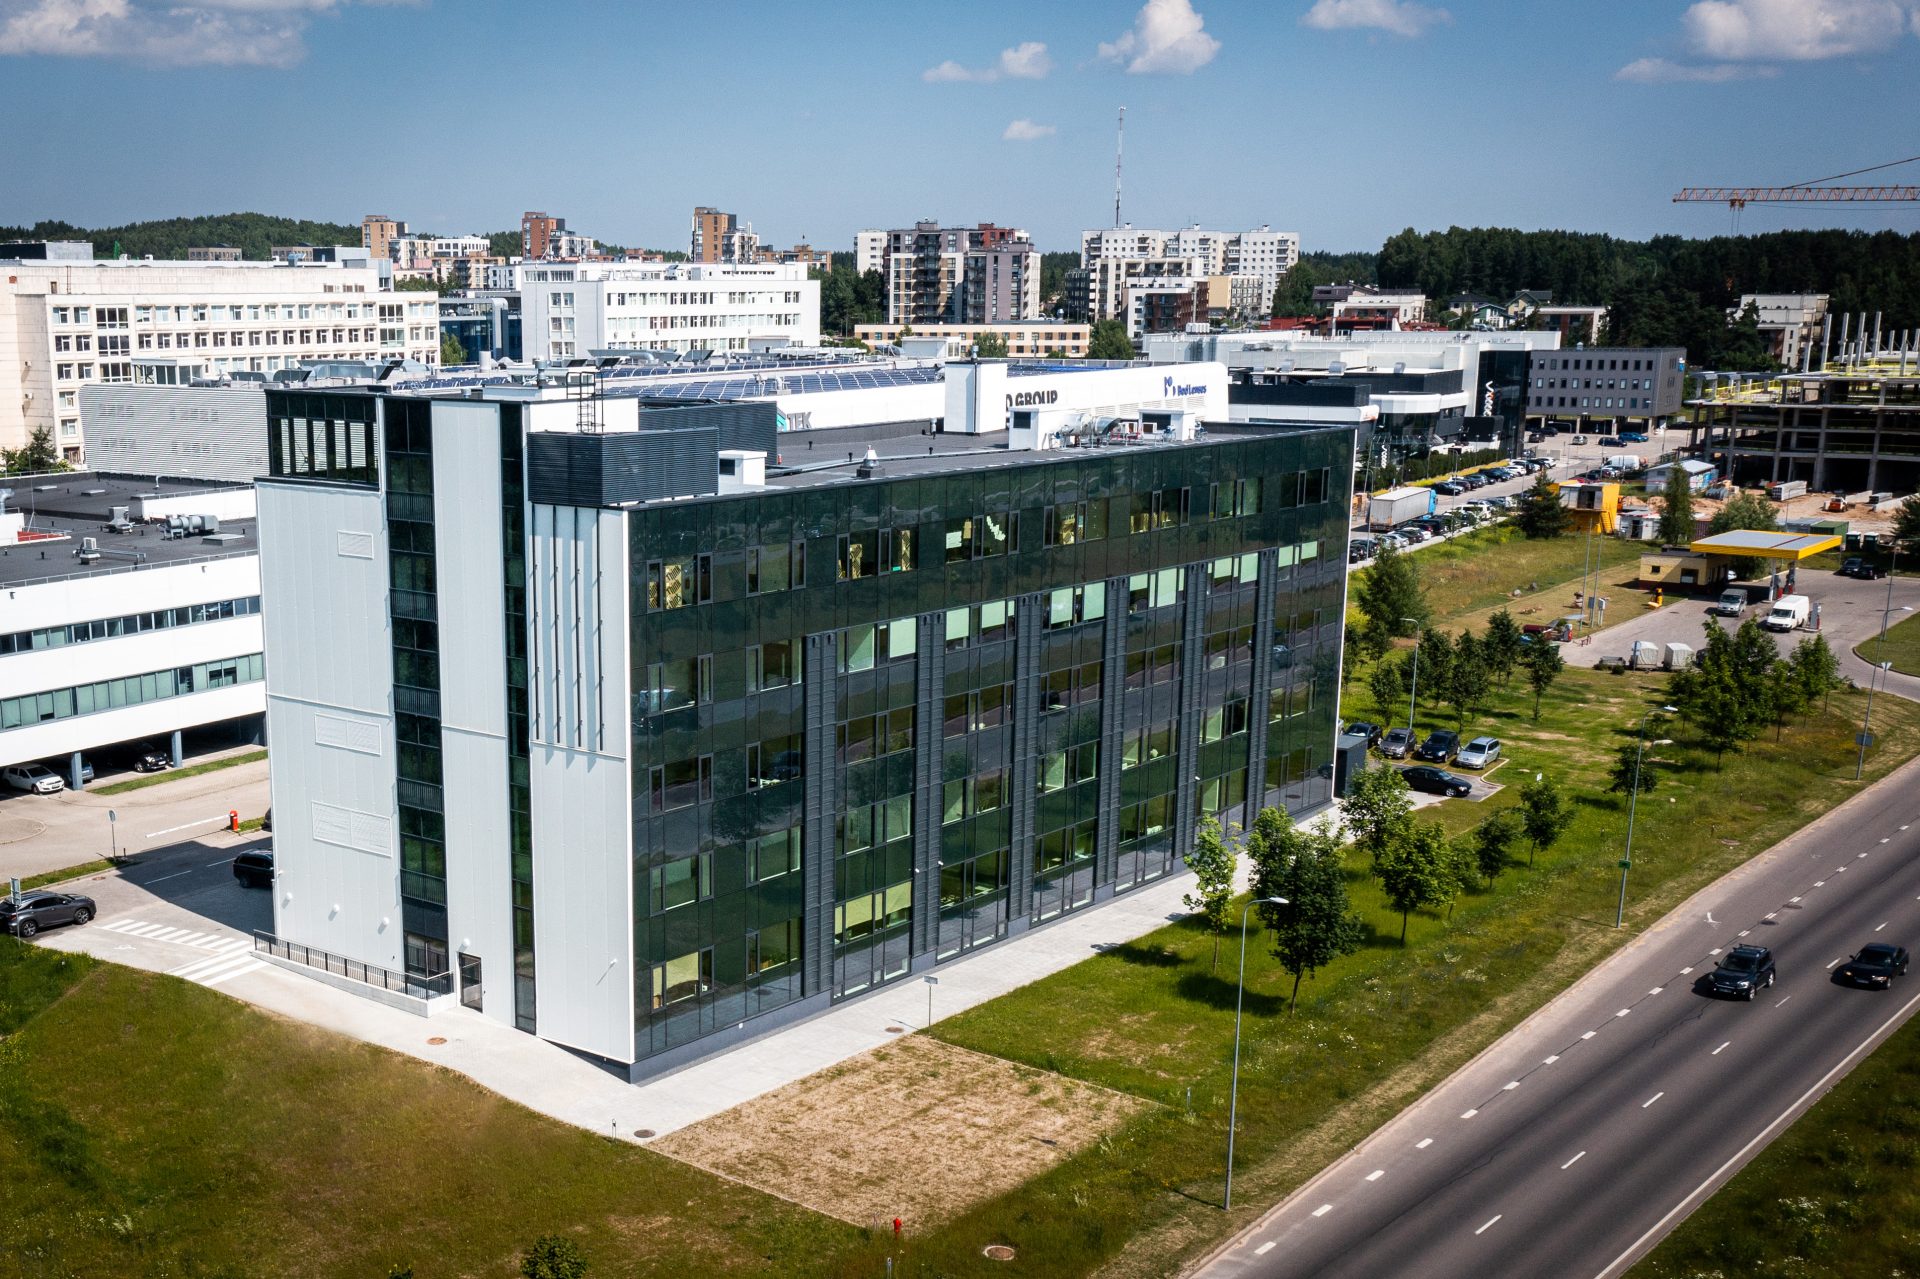 Mokslinių tyrimų, eksperimentinės plėtros ir inovacijų (MTEPI) centro statyba Visorių informacinių technologijų parke